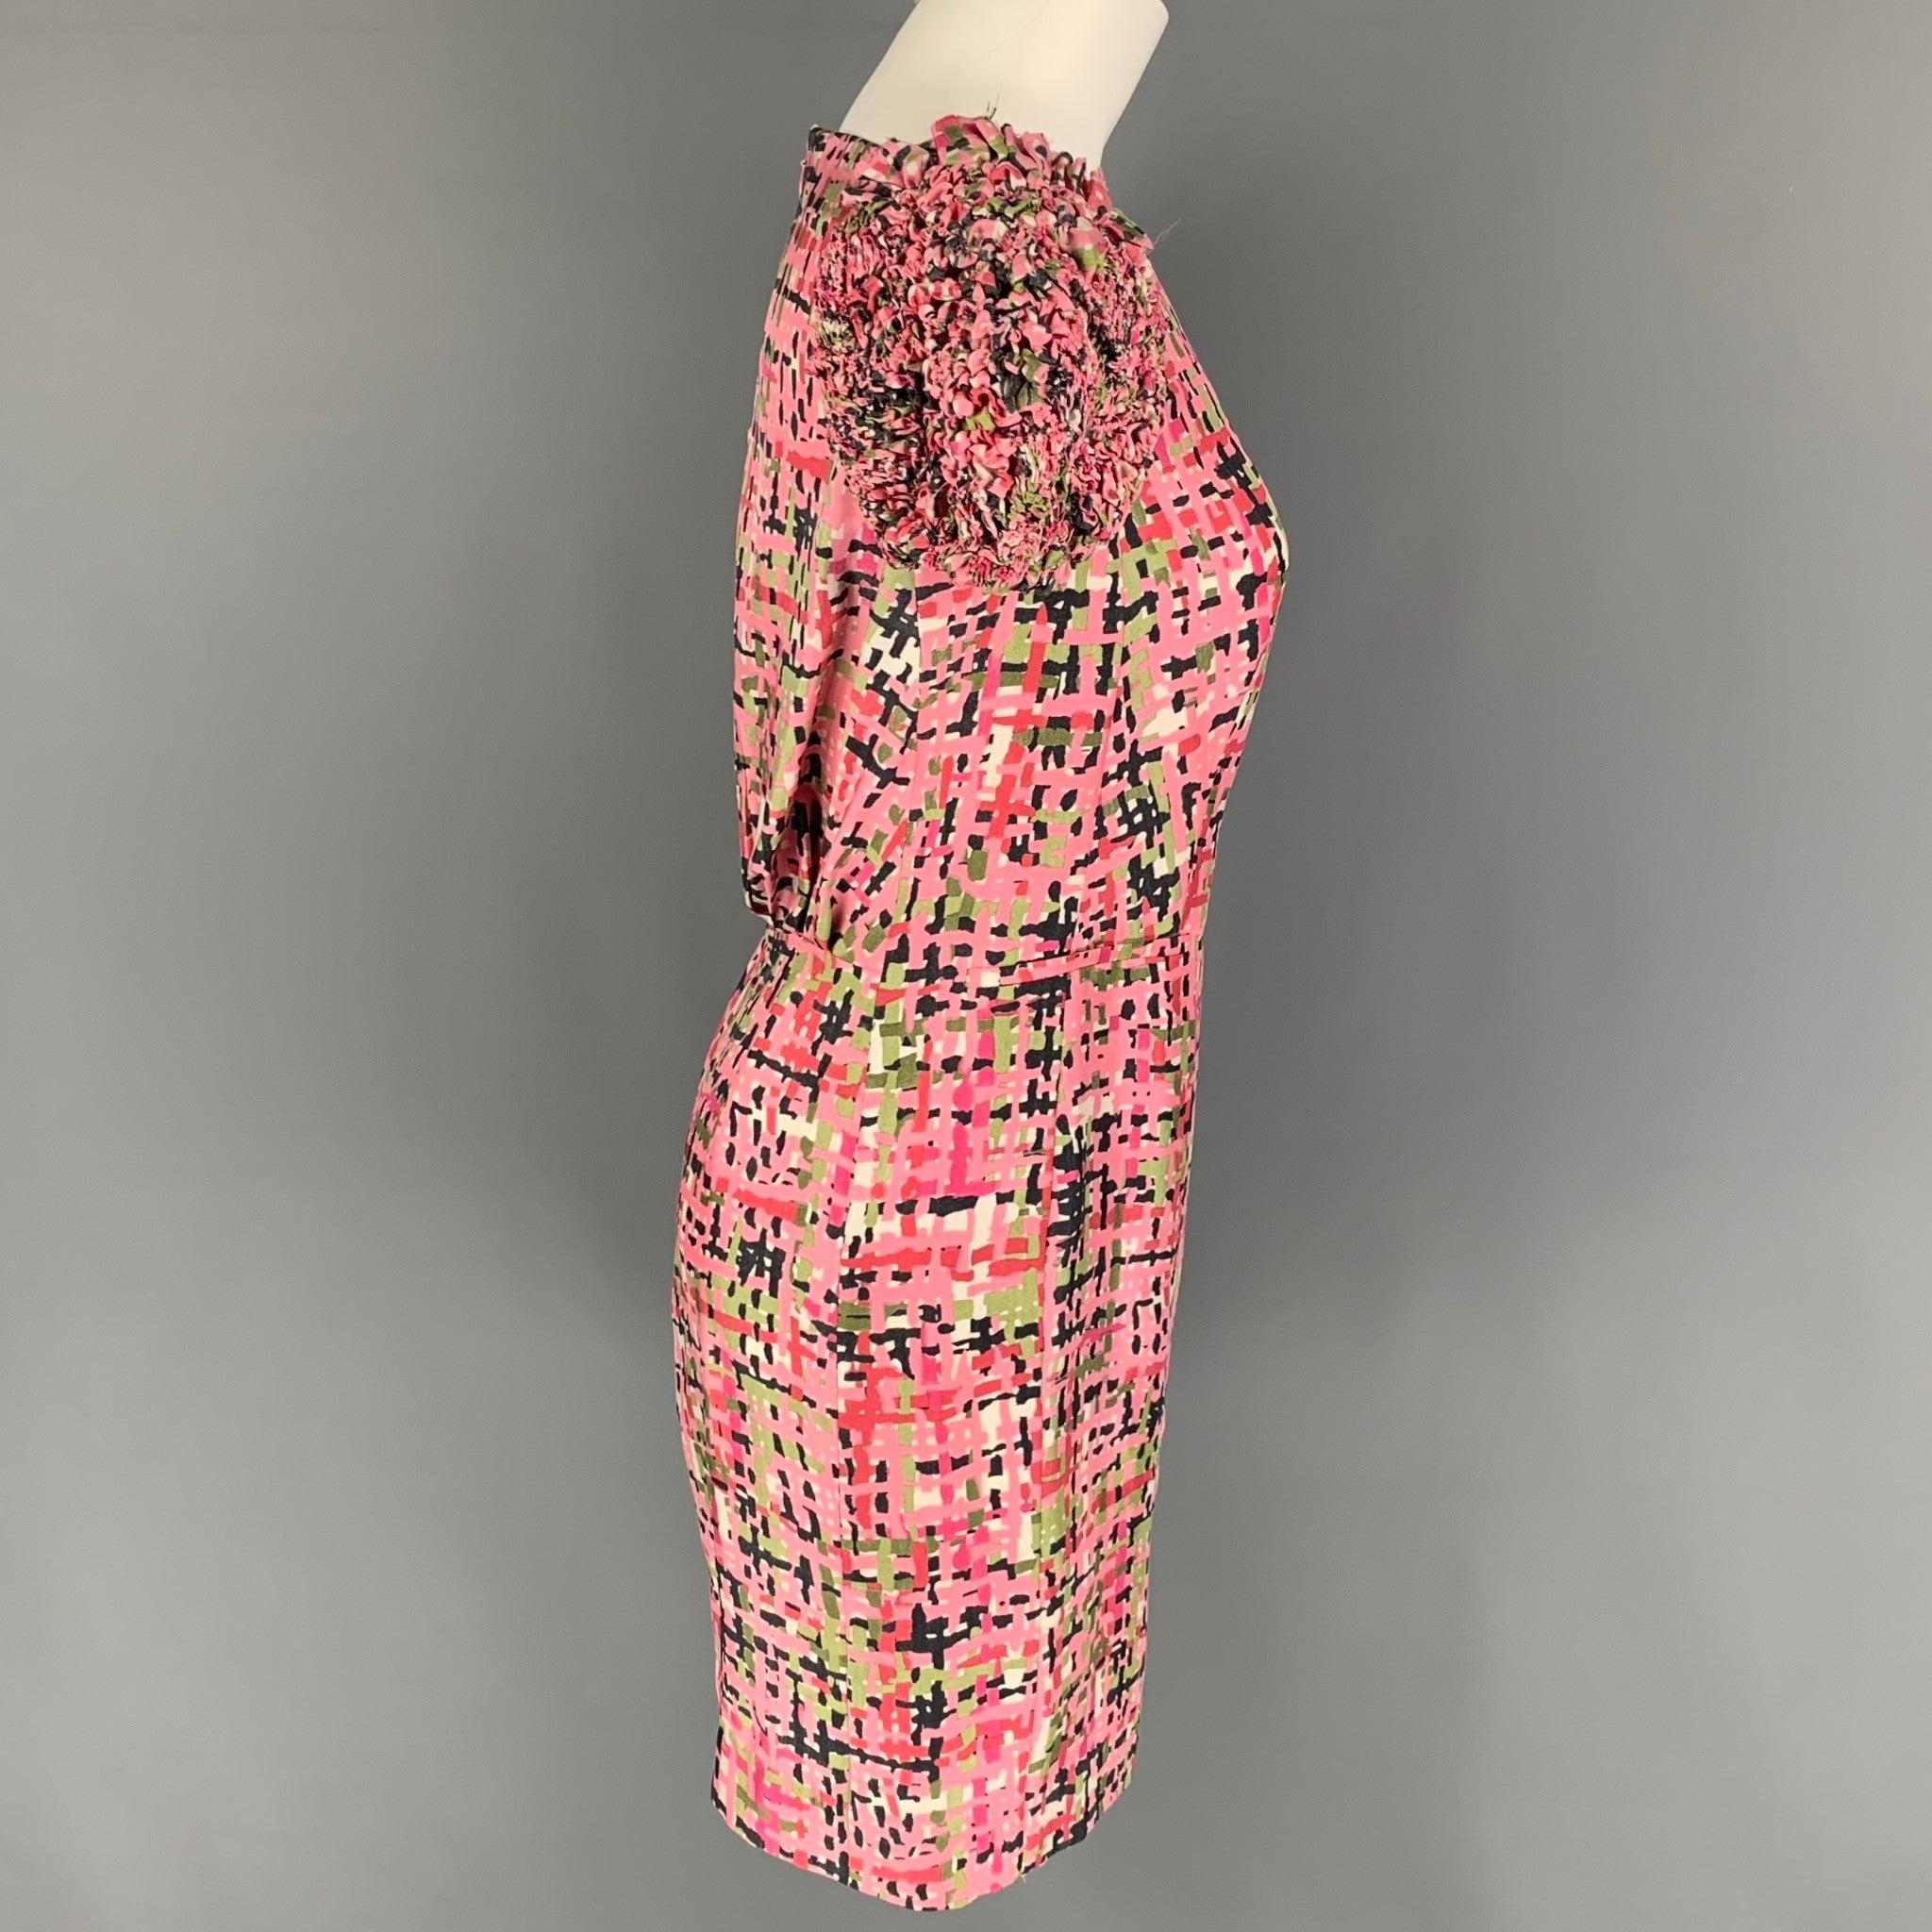 YVES SAINT LAURENT Kleid aus Seide mit abstraktem Muster in Rosa und Grün, im Shift-Stil, mit gerafften Ärmeln und einem Reißverschluss am Rücken. Hergestellt in Frankreich.
Sehr gut
Gebrauchtes Zustand. 

Markiert:   F34 

Abmessungen: 
